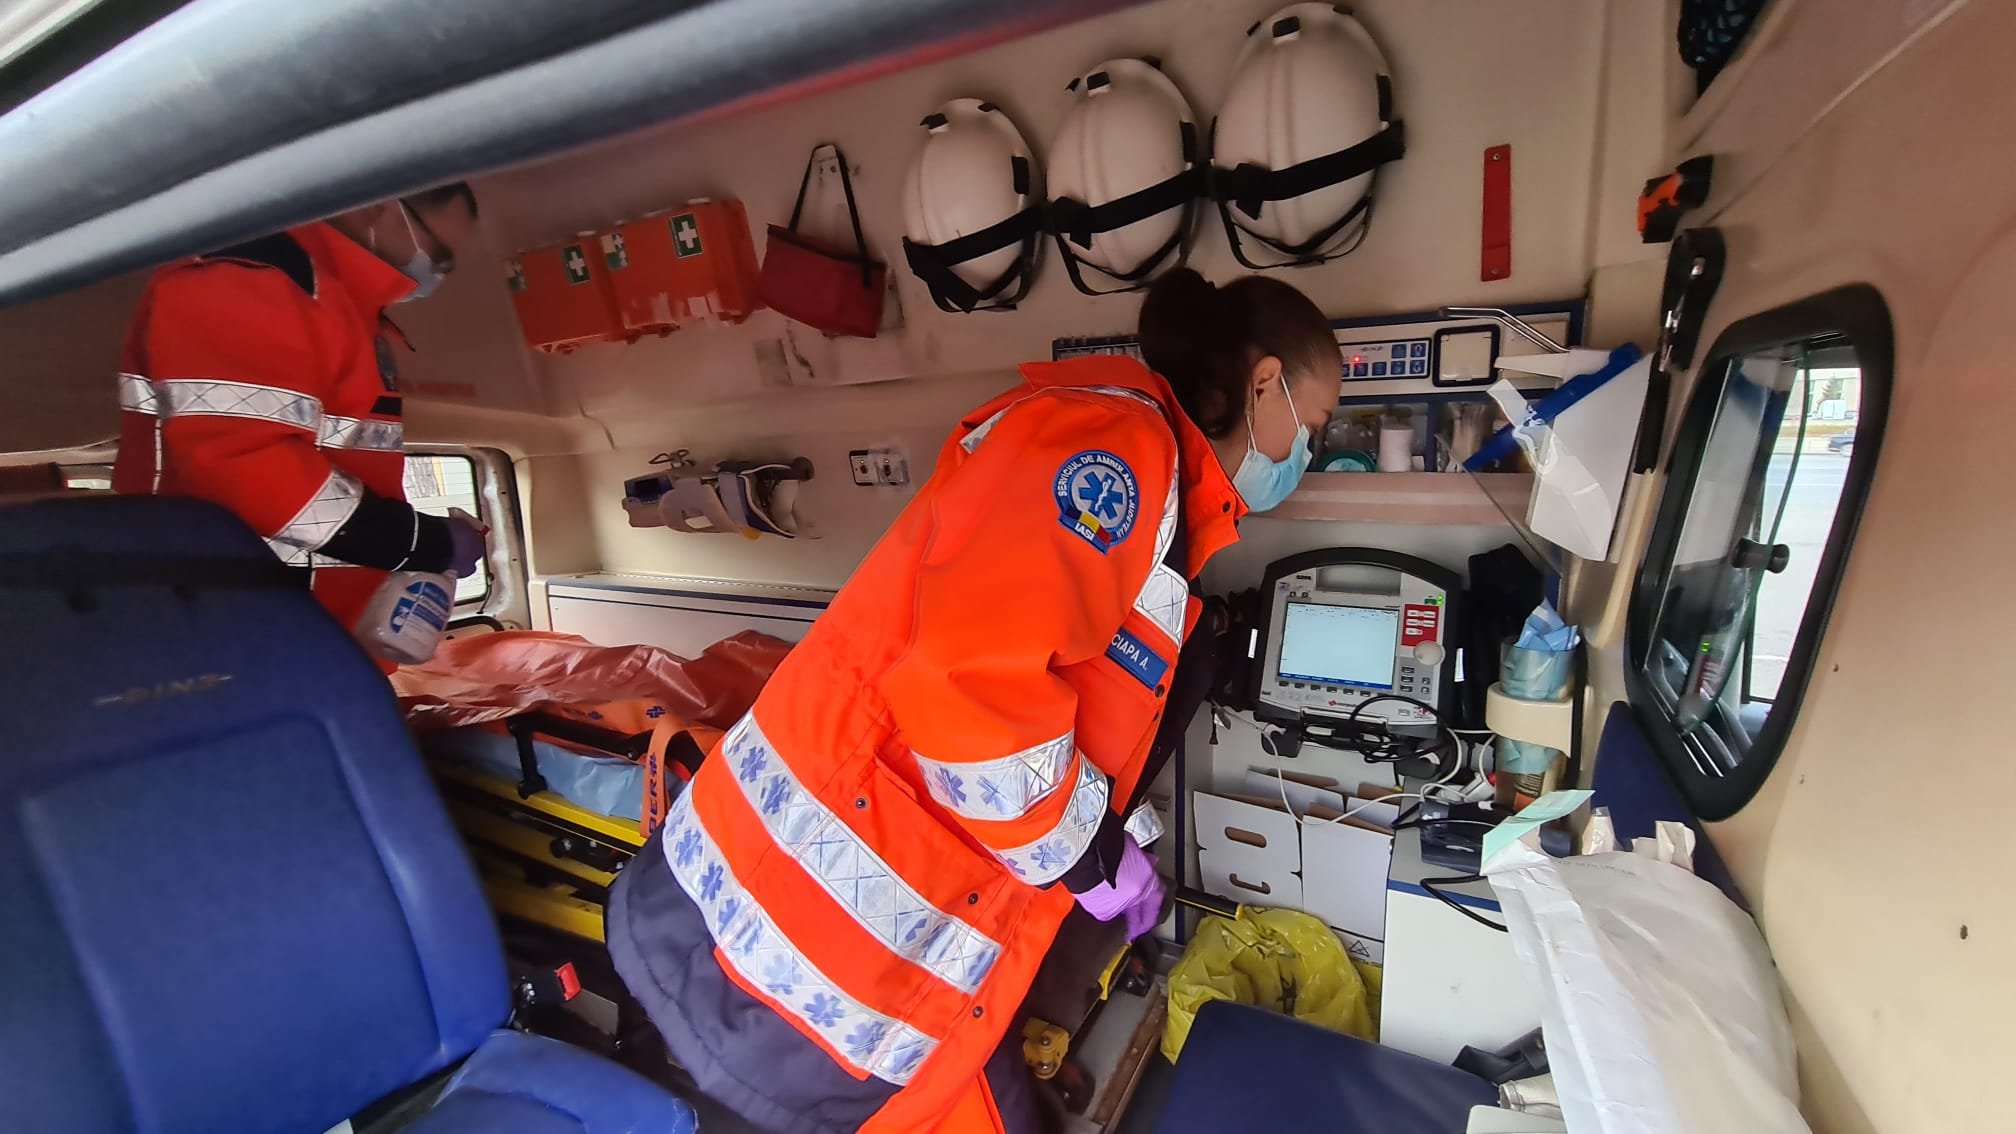  Valul patru în ambulanță: patru povești cutremurătoare spuse de martori oculari